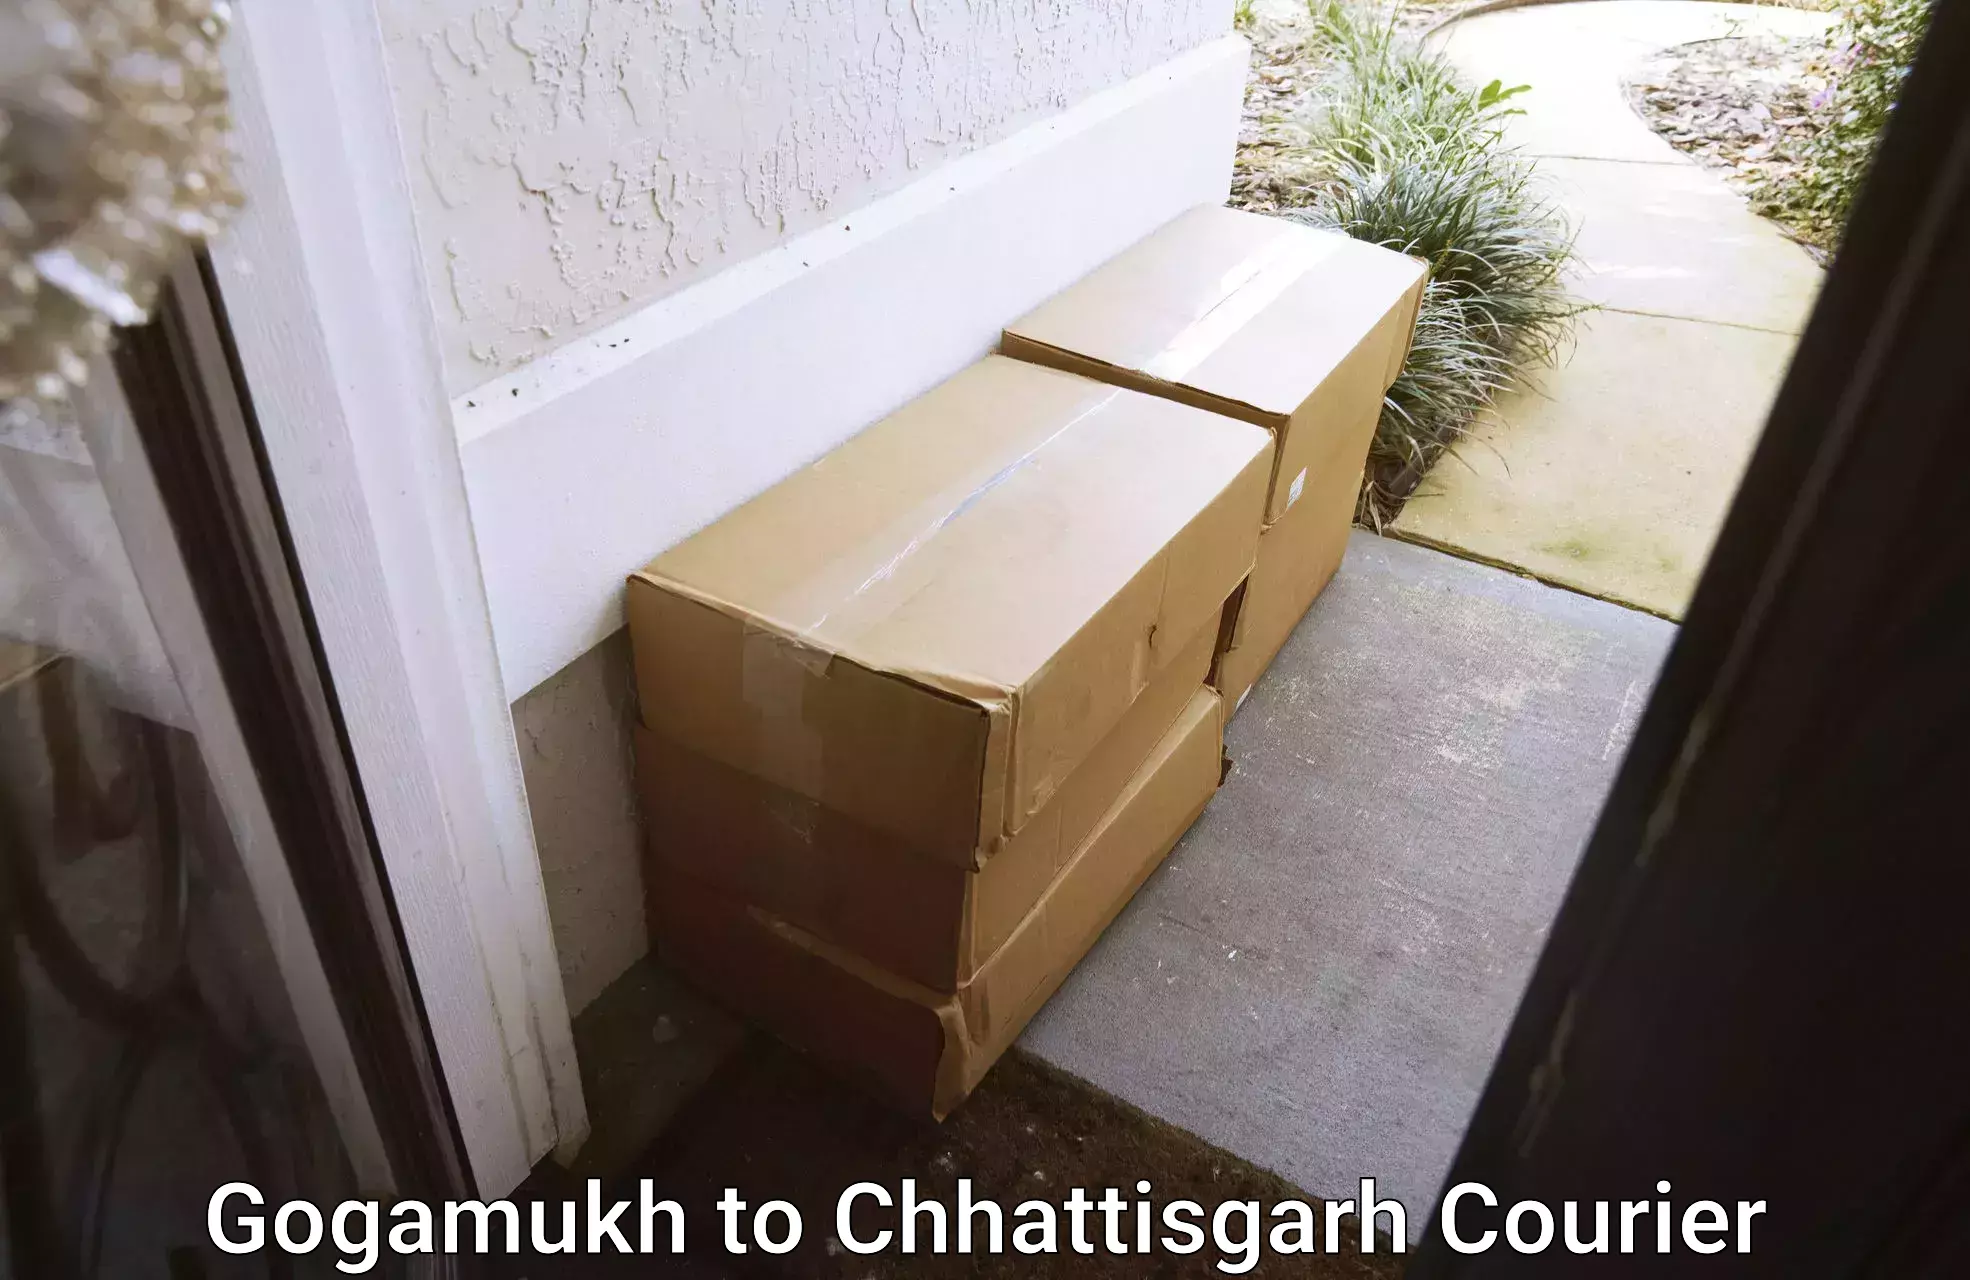 Express logistics providers Gogamukh to Korea Chhattisgarh